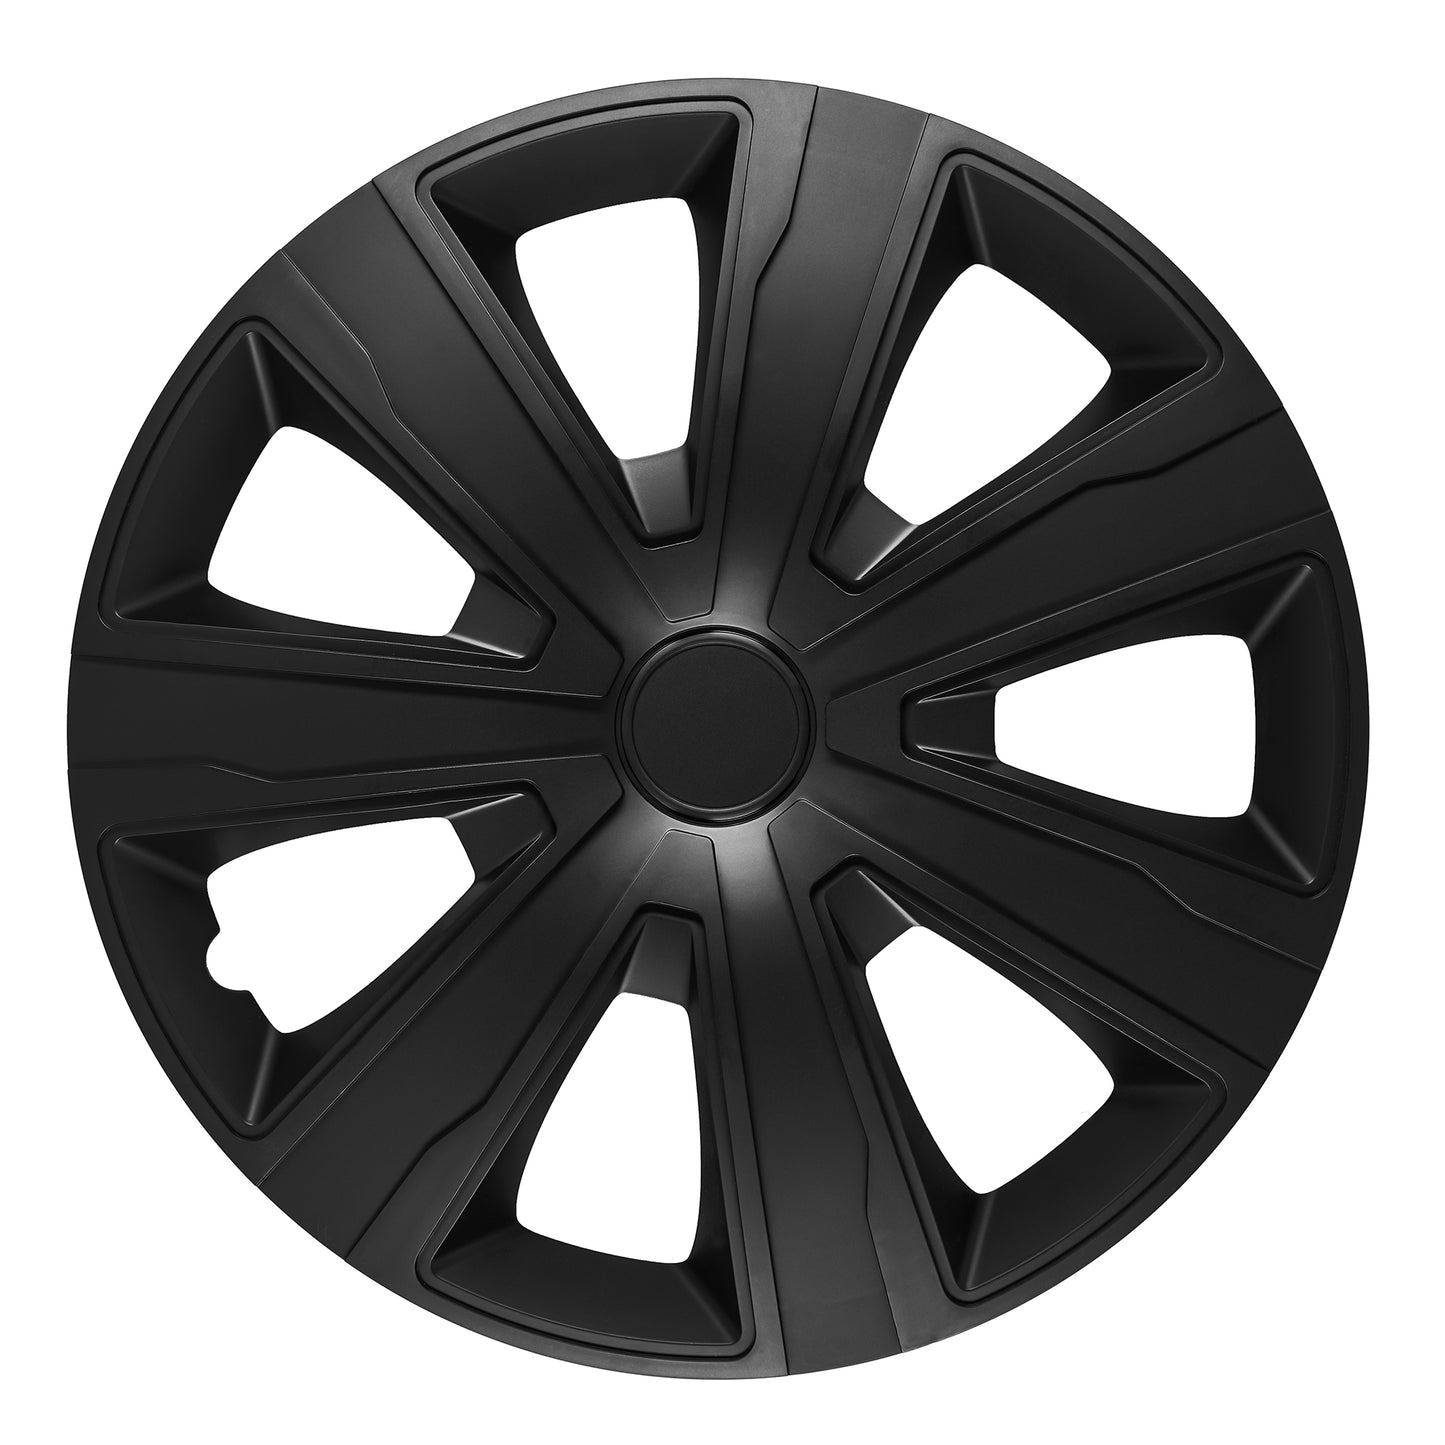 Tenzo Wheel Cover Kit - Black (4 Pack)